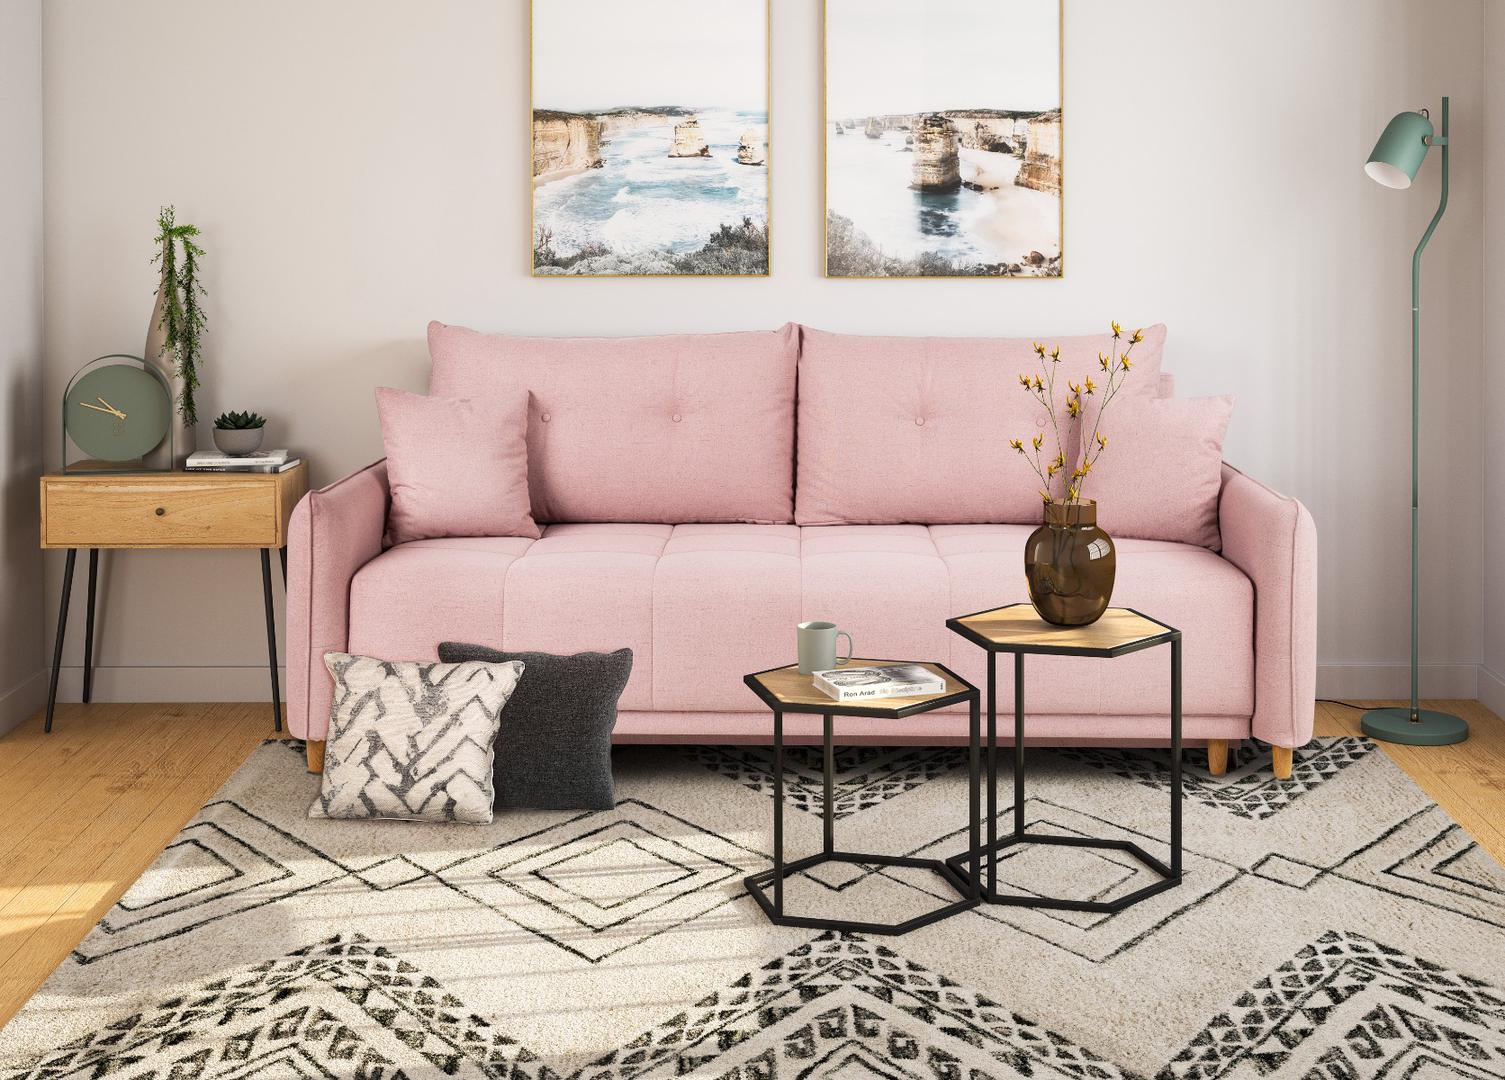 Nova kolekcija iz Prime ima predivan ružičasti kauč koji će se sjajno uklopiti u moderne interijere